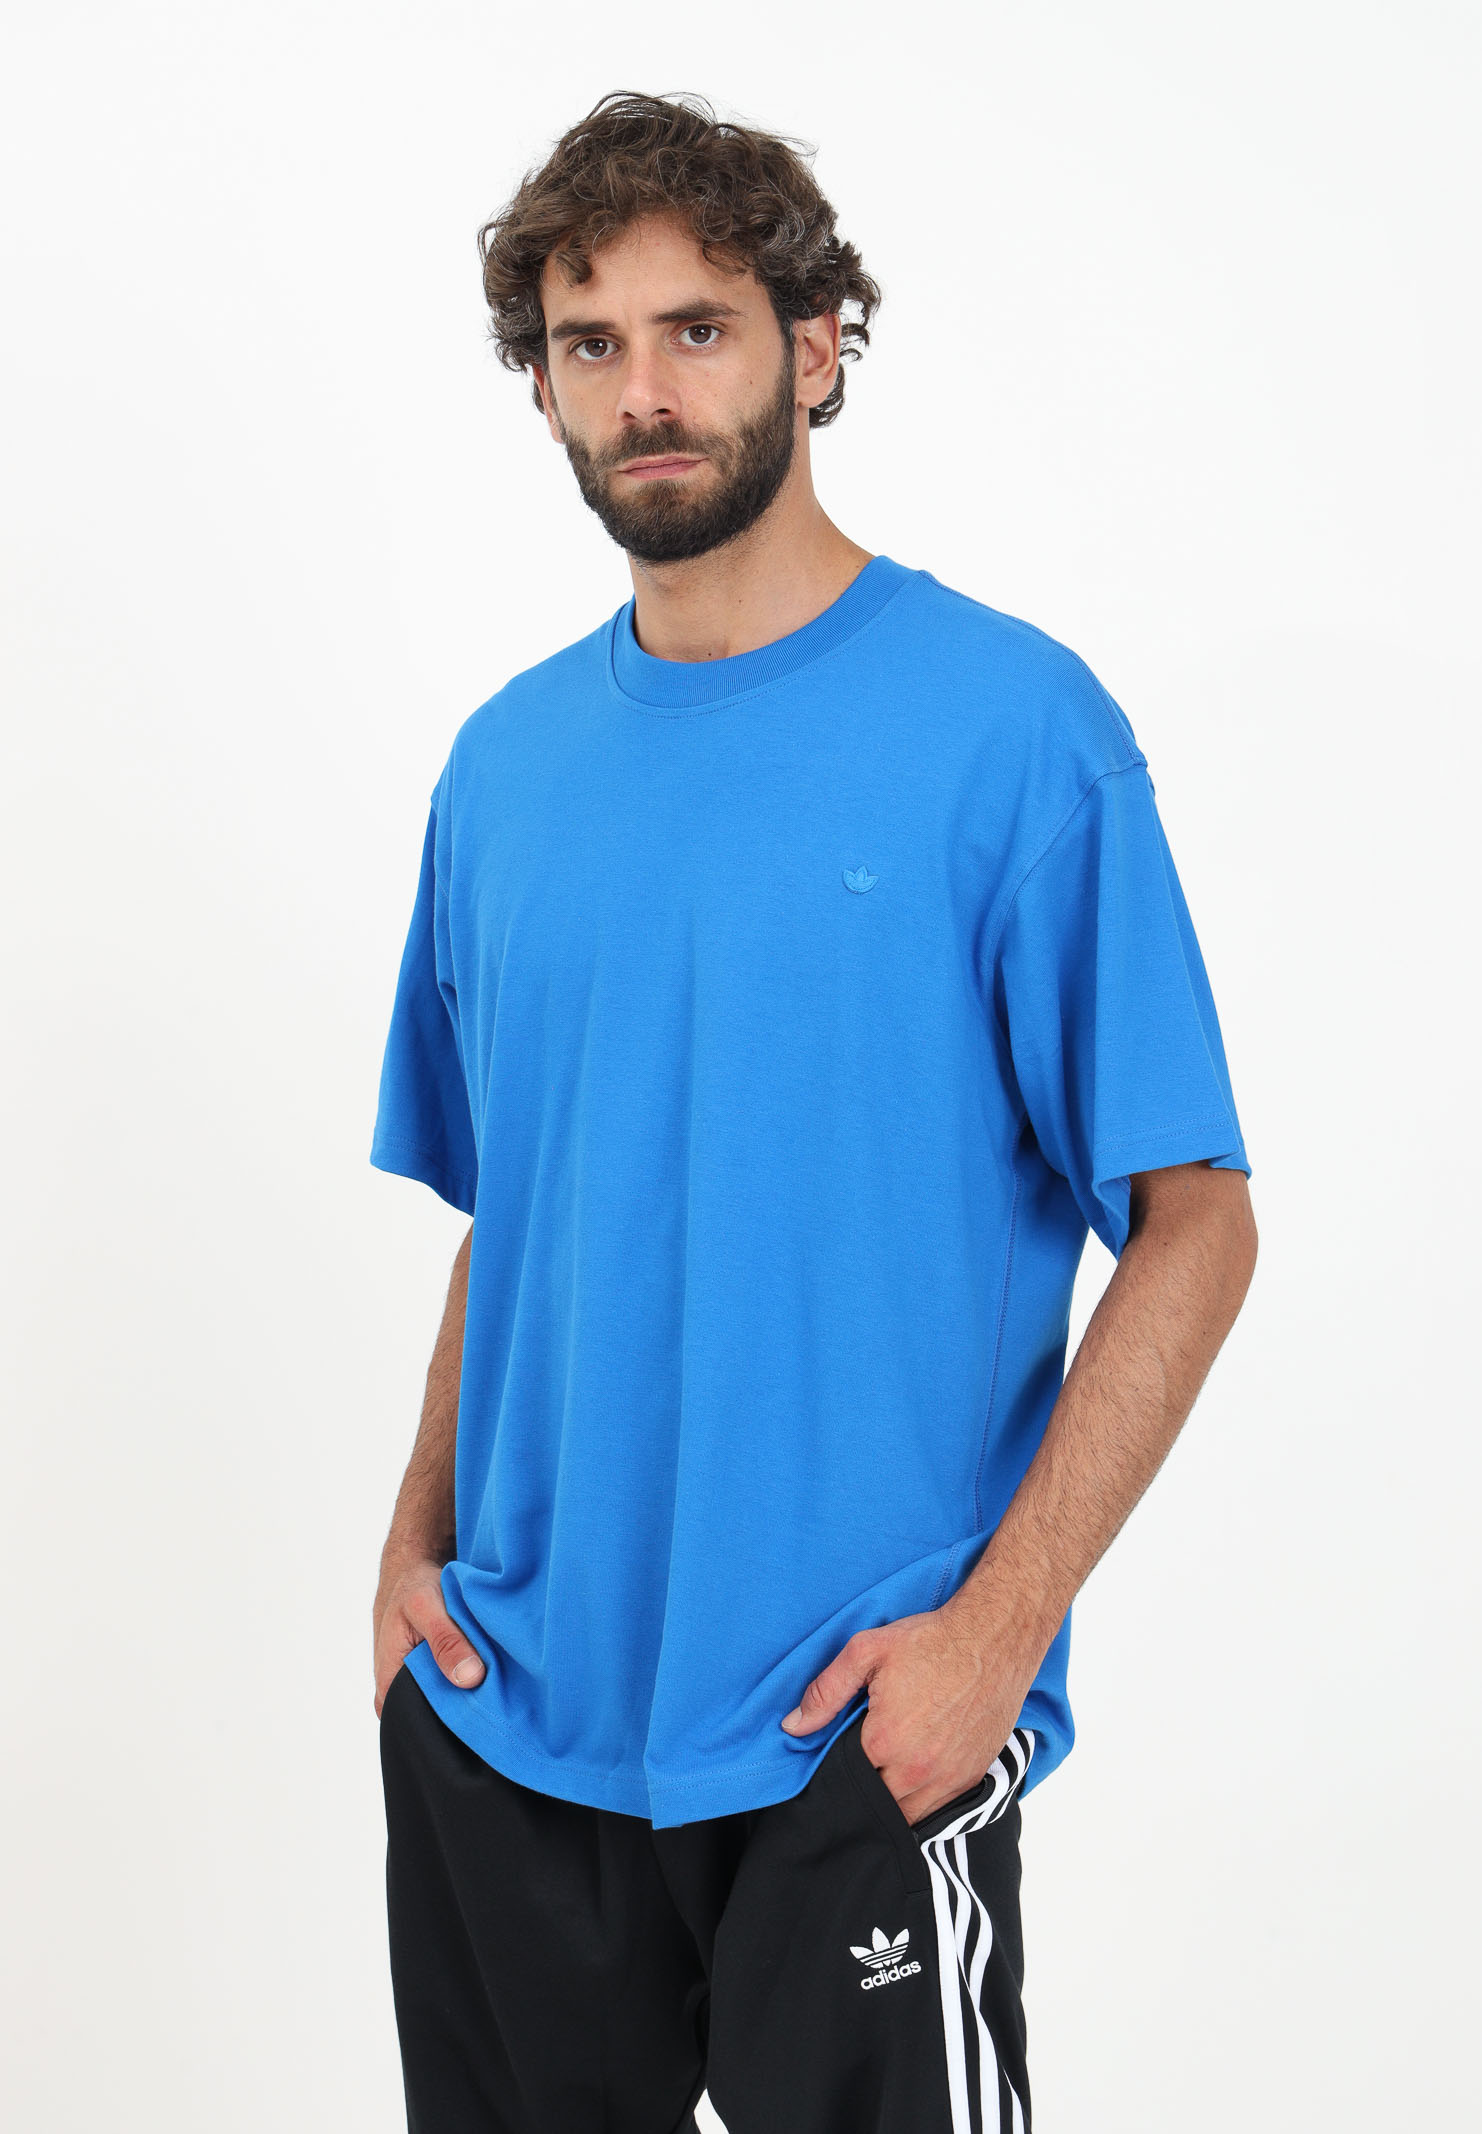 Adicolor Contempo light blue men\'s t-shirt - ADIDAS ORIGINALS - Pavidas